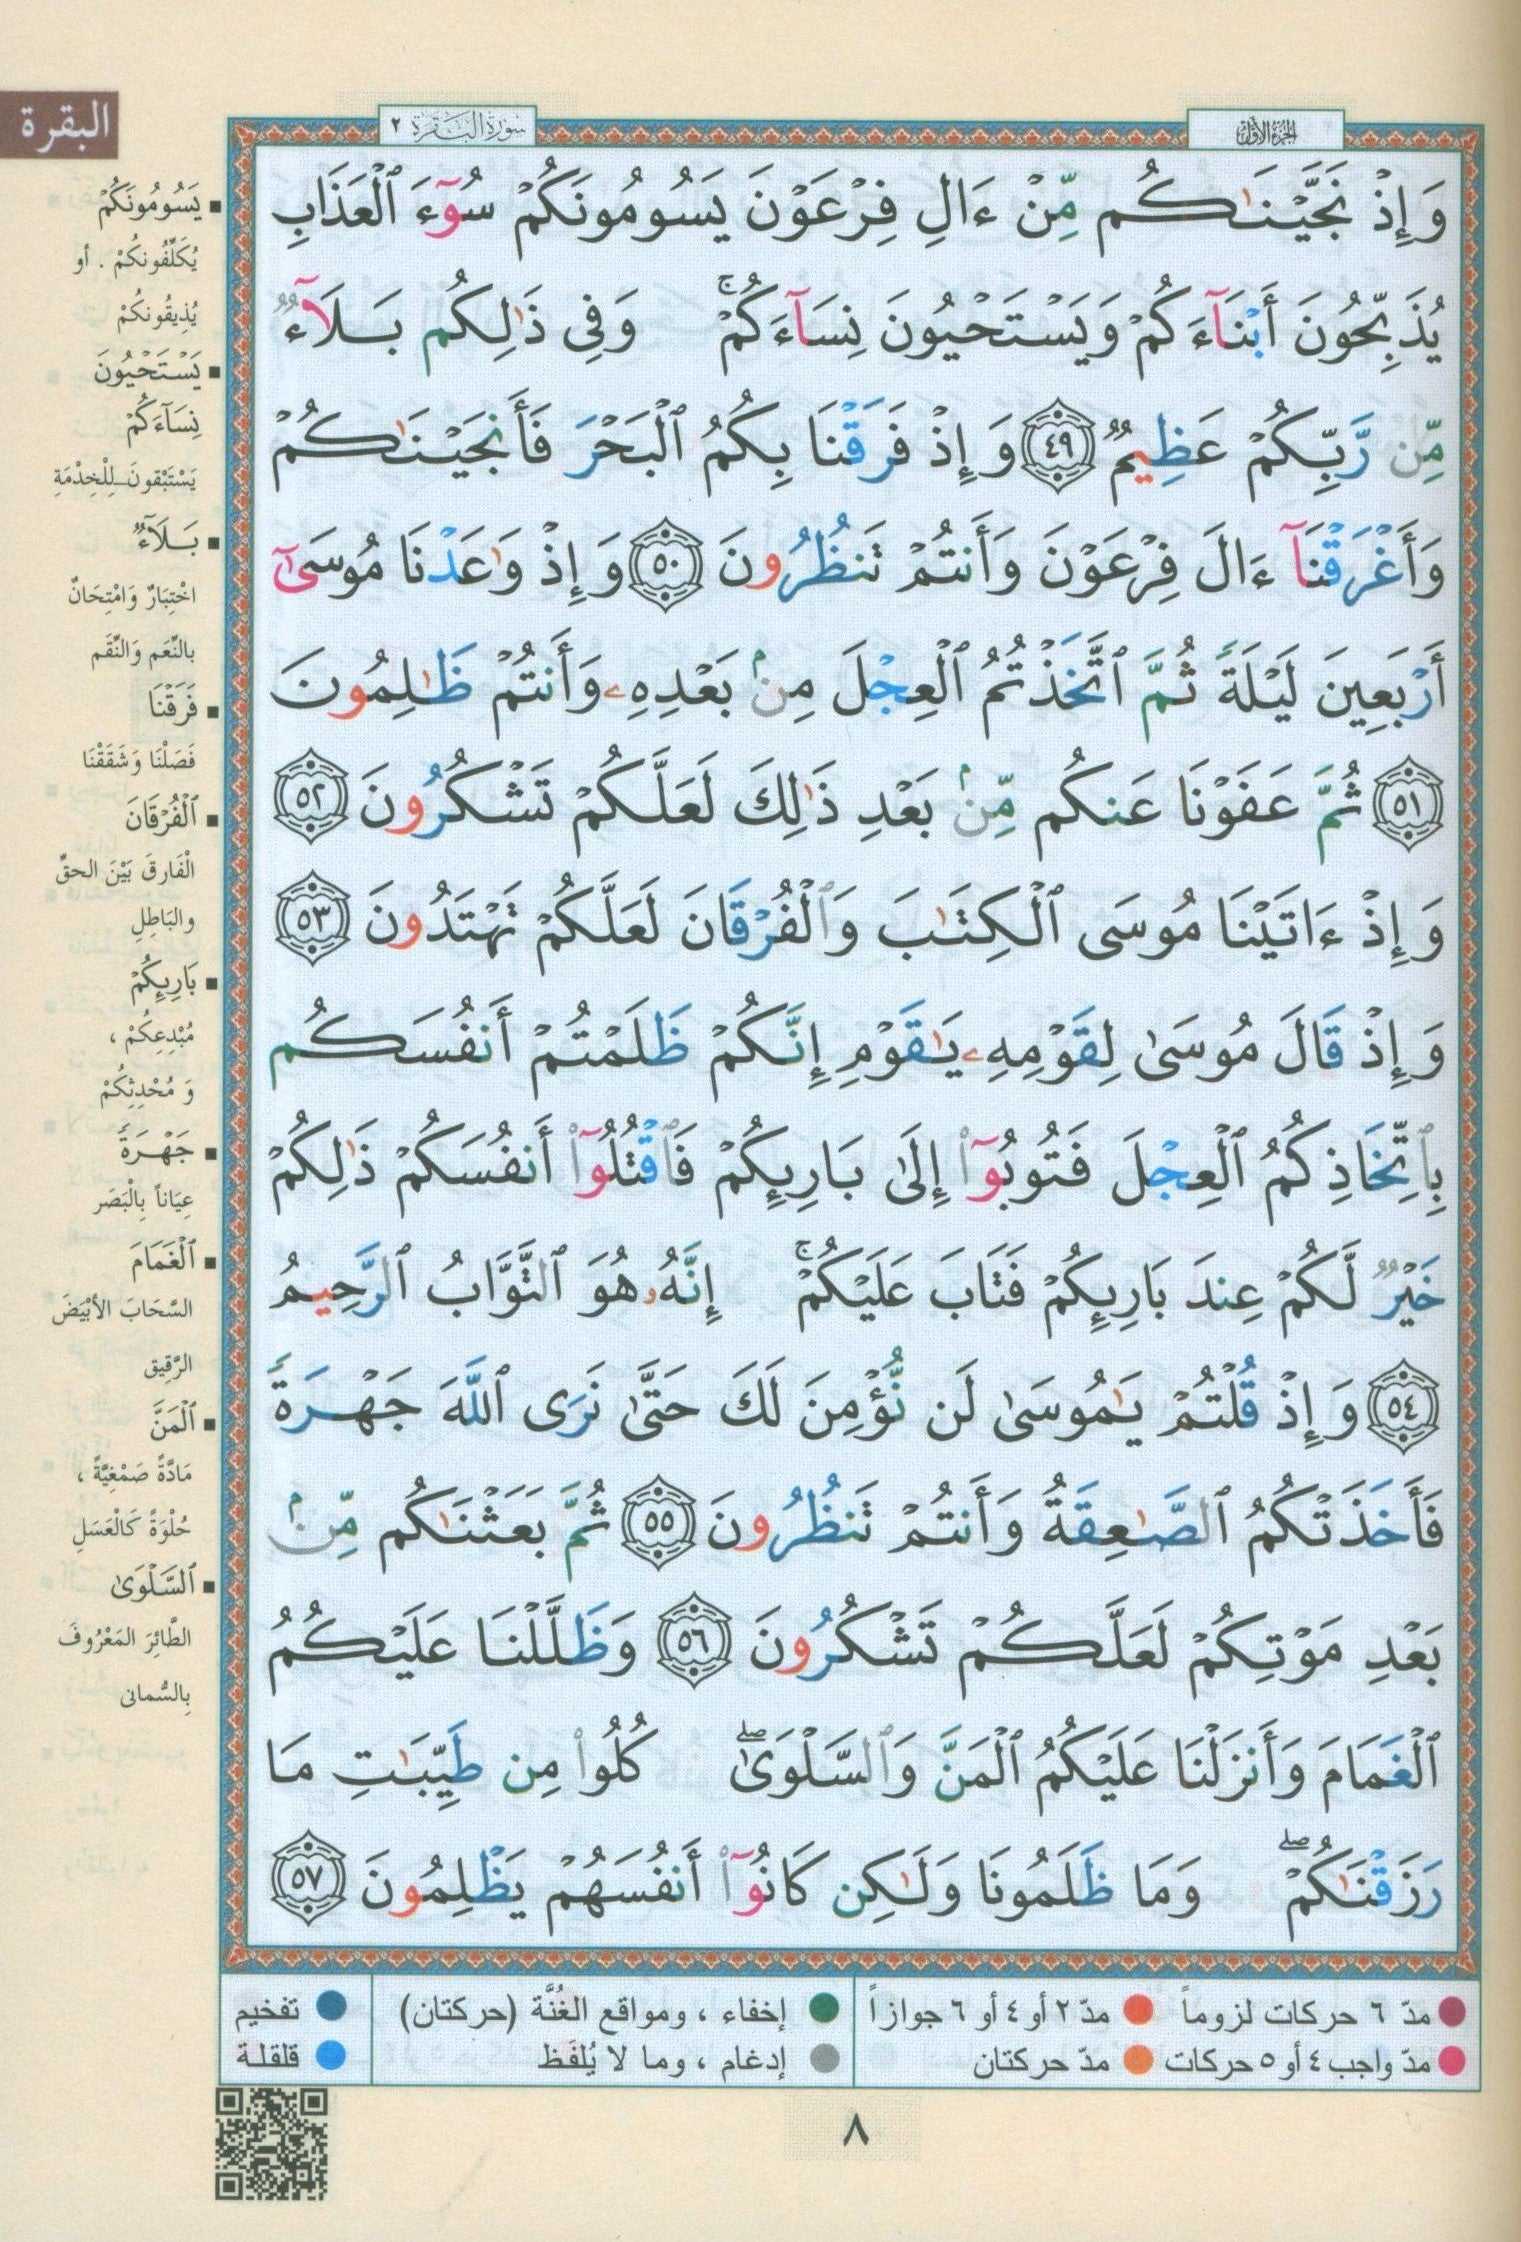 Color Coded Tajweed Quran 30 Parts Leather Case 10" x 14" مصحف التجويد المجزء